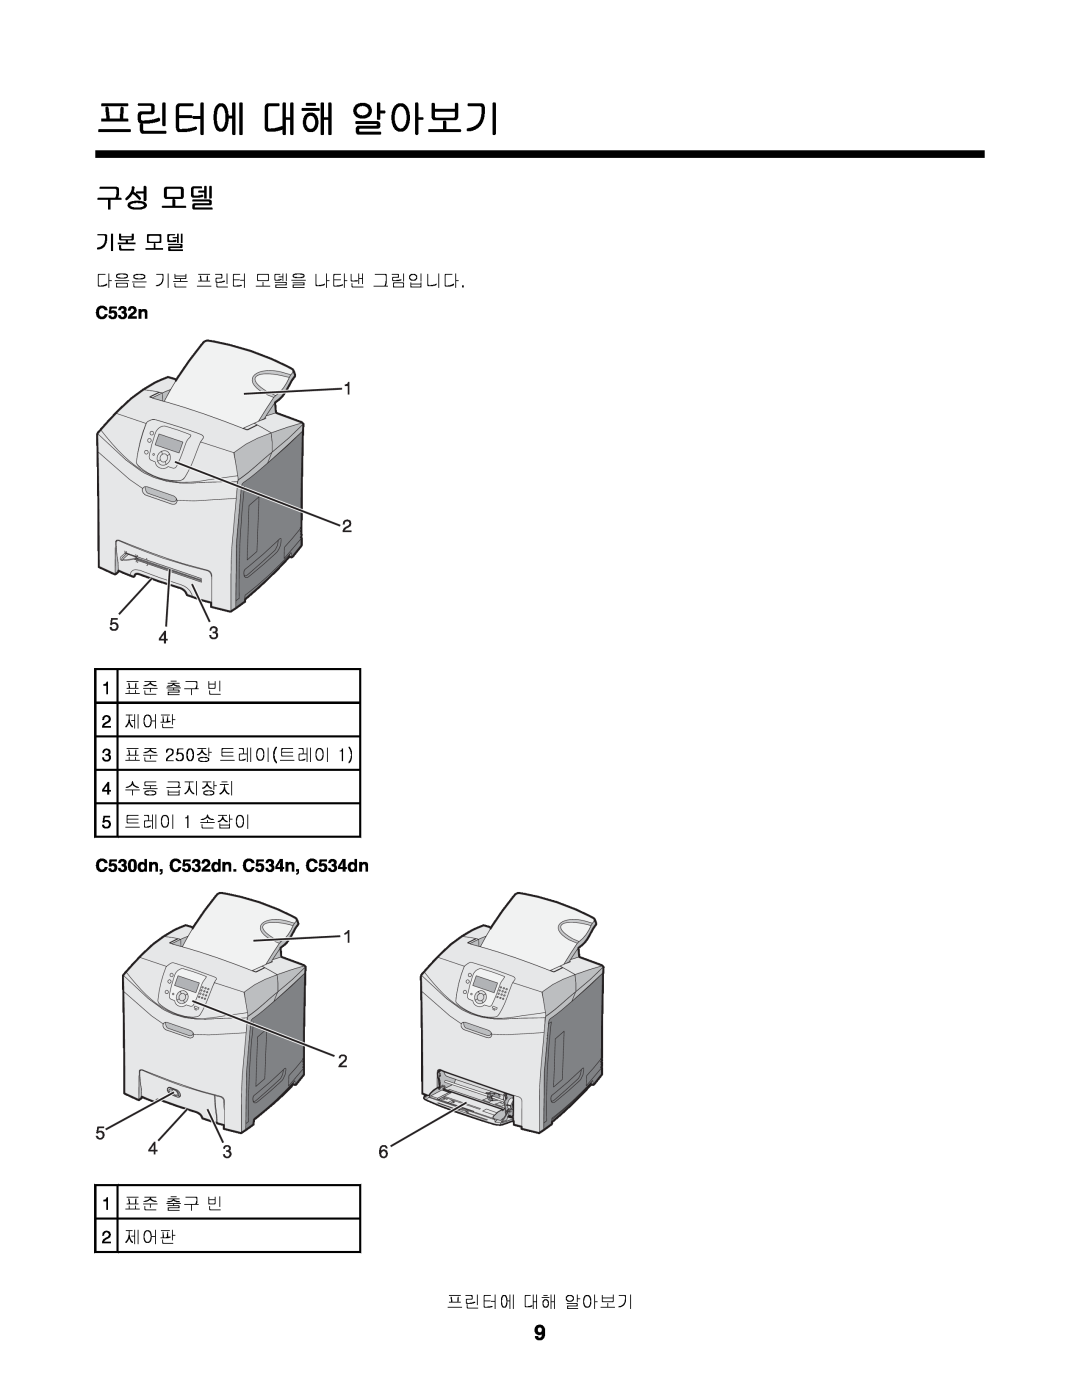 Lexmark C530, C532, C534 manual 프린터에 대해 알아보기, 구성 모델, 기본 모델 